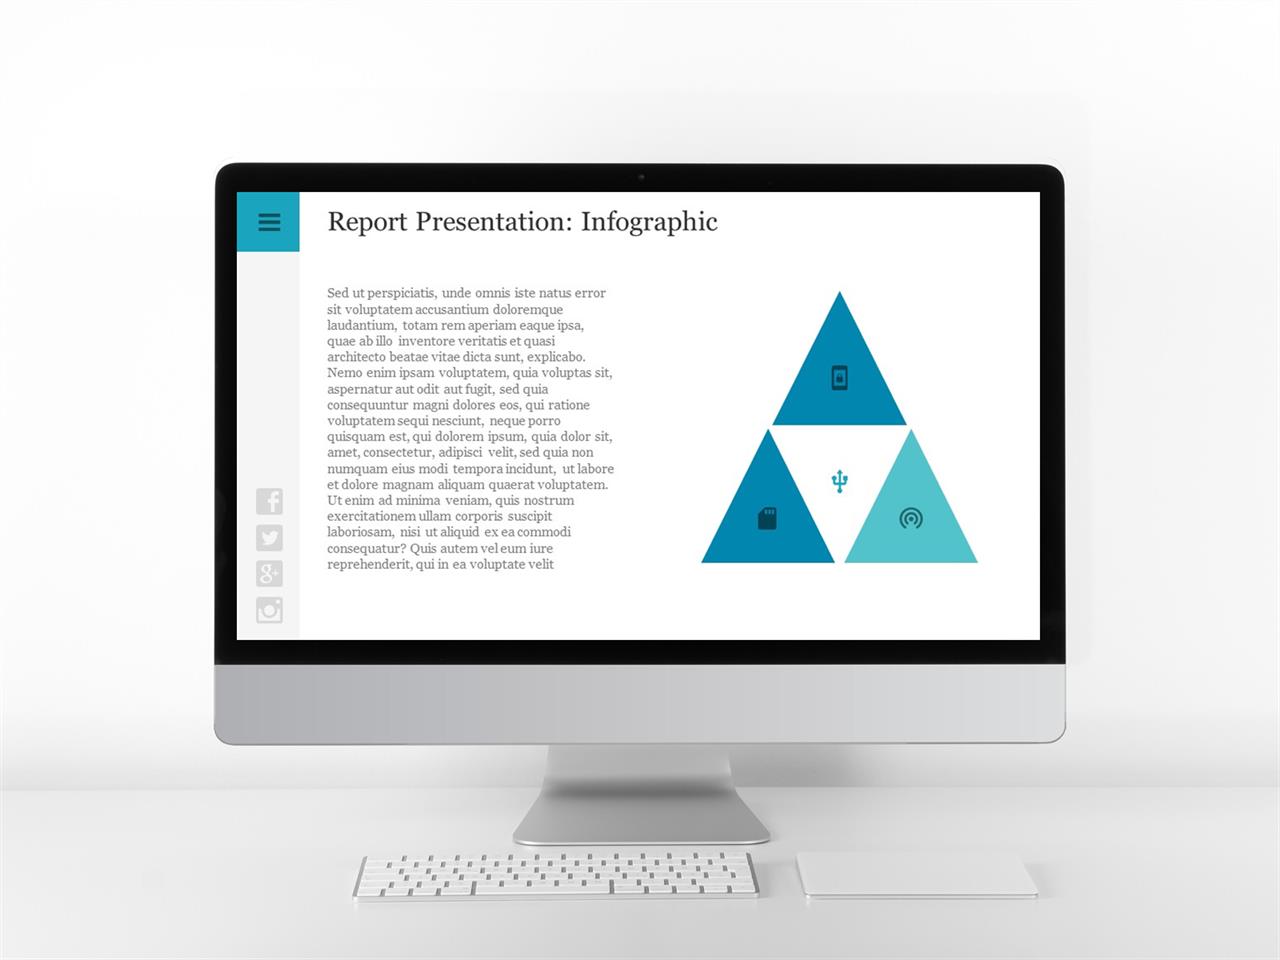 PPT다이어그램 피라미드형  프로급 파워포인트탬플릿 사이트 미리보기